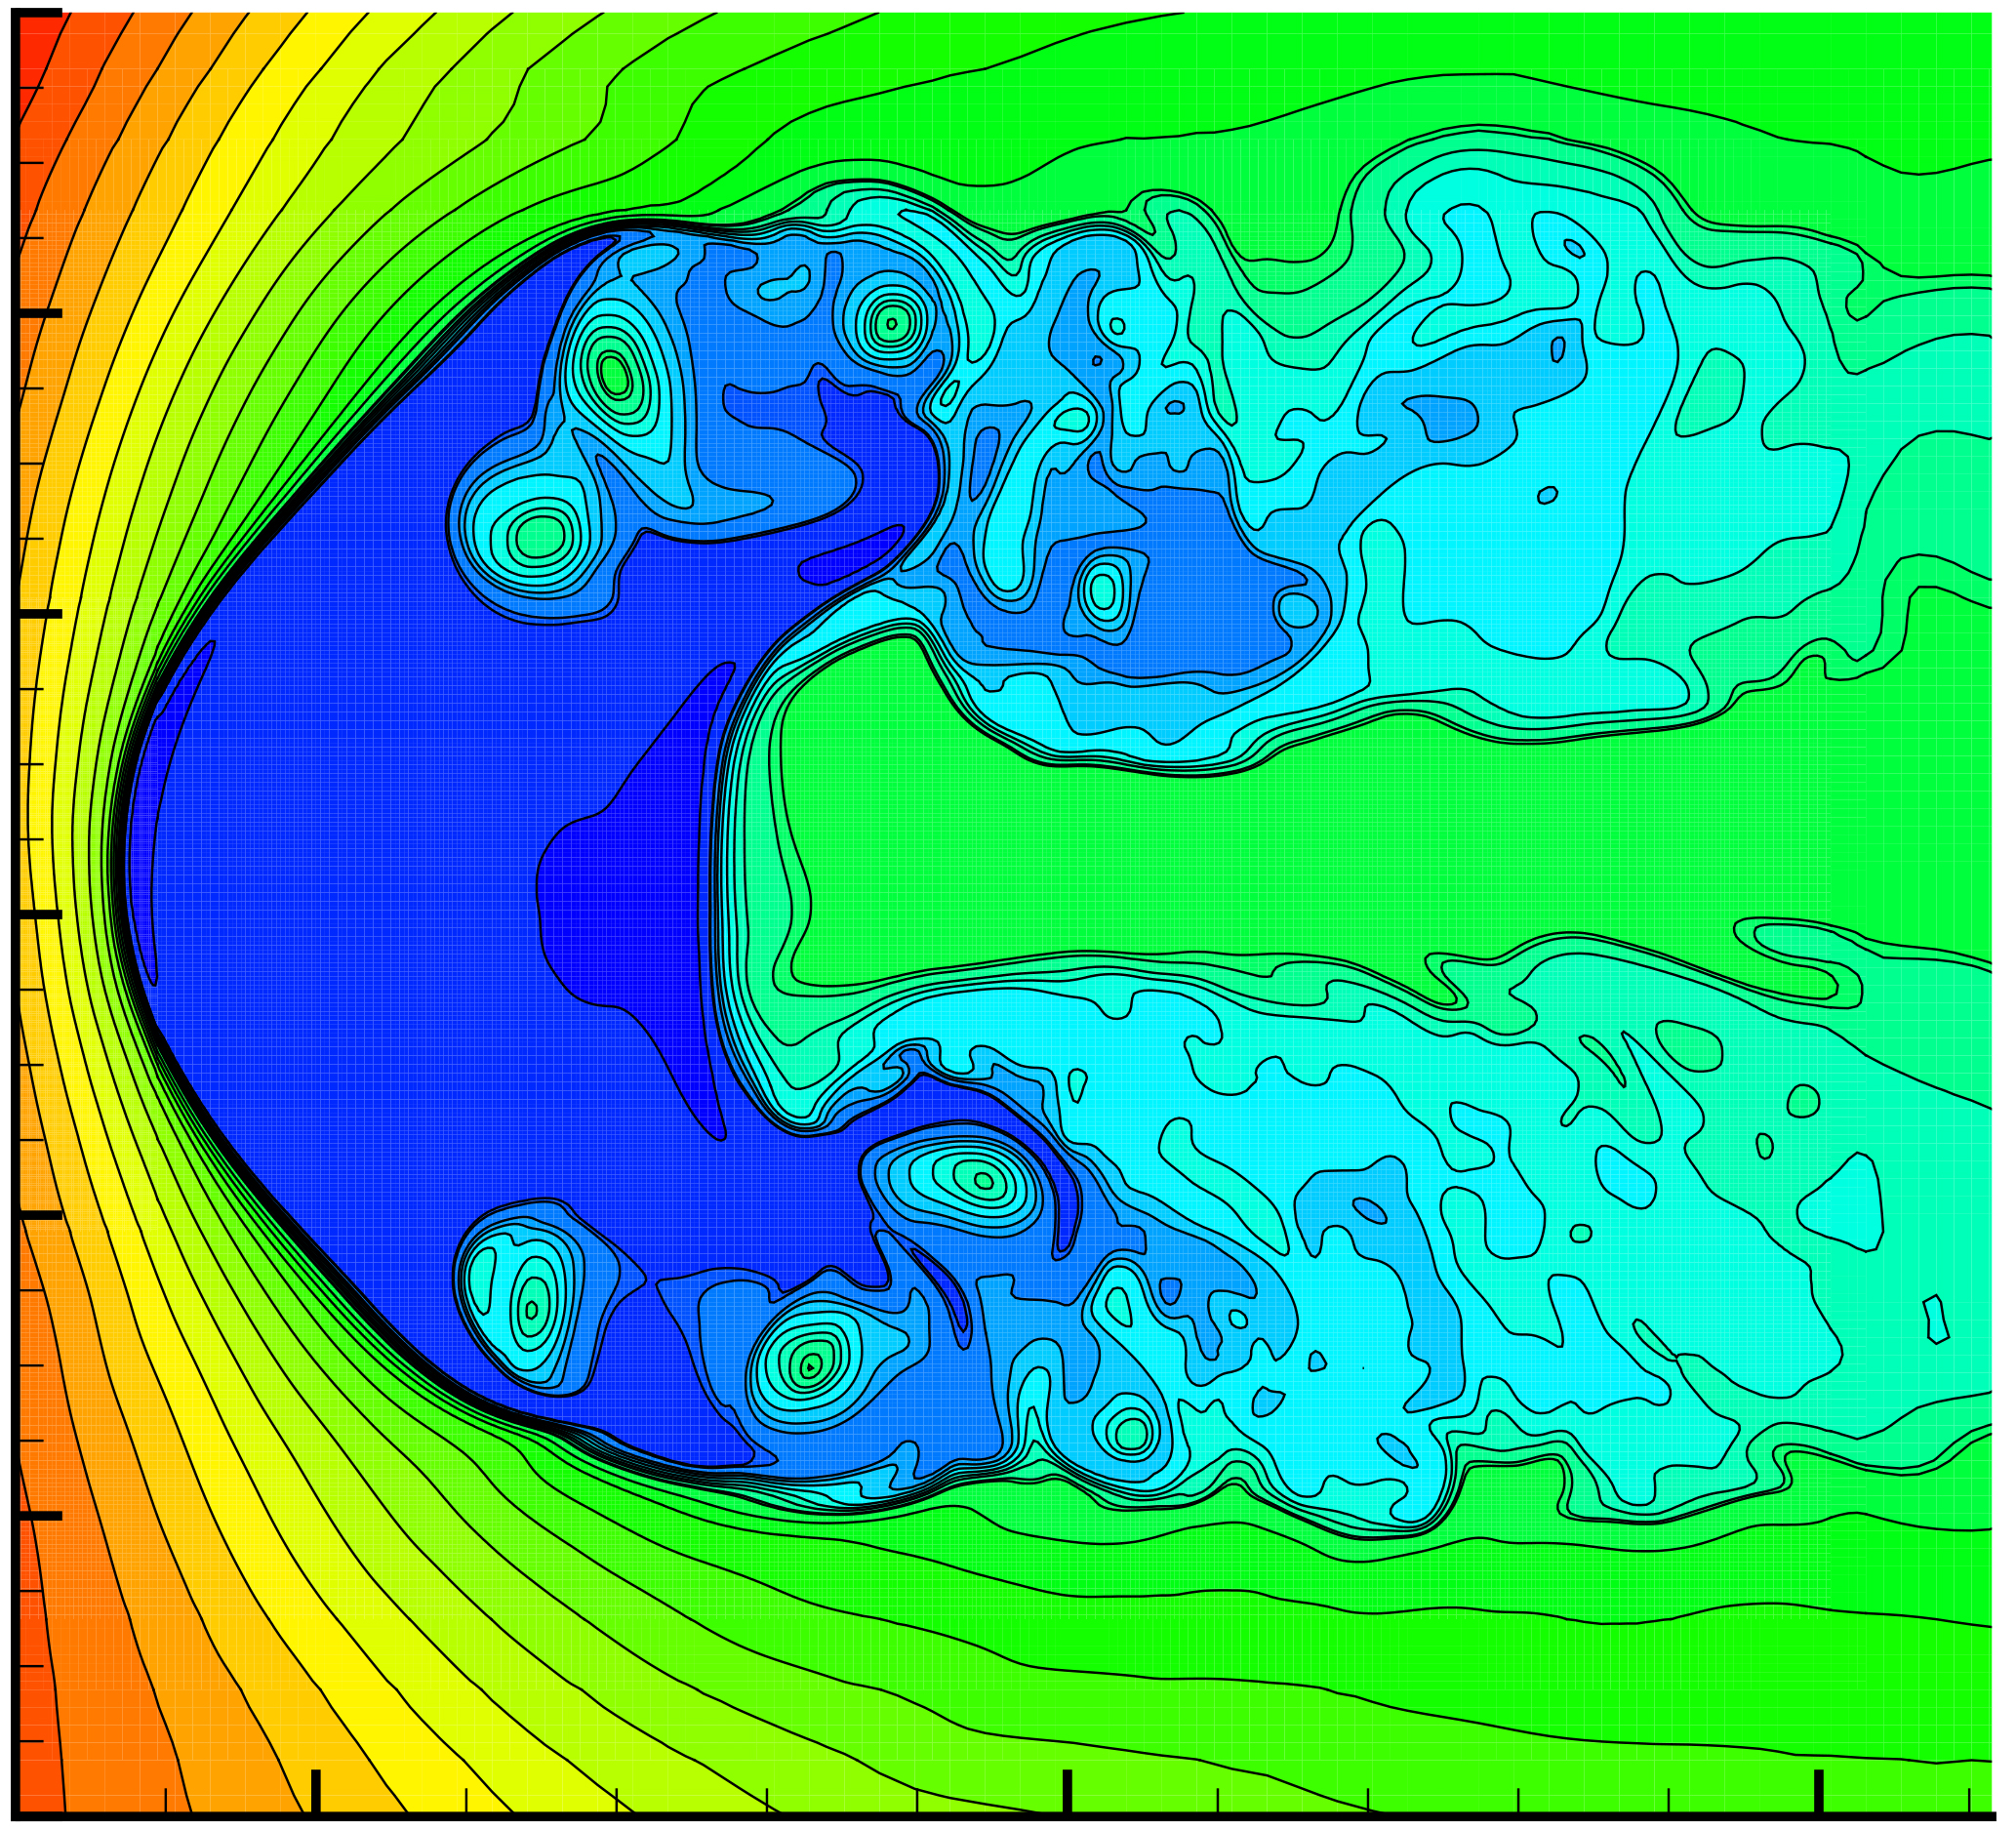 Моделирование гелиосферы и ее необычной формы, вызванной двумя струями, исходящими от Солнца. Предоставлено: М.Офер / НАСА / ААС.